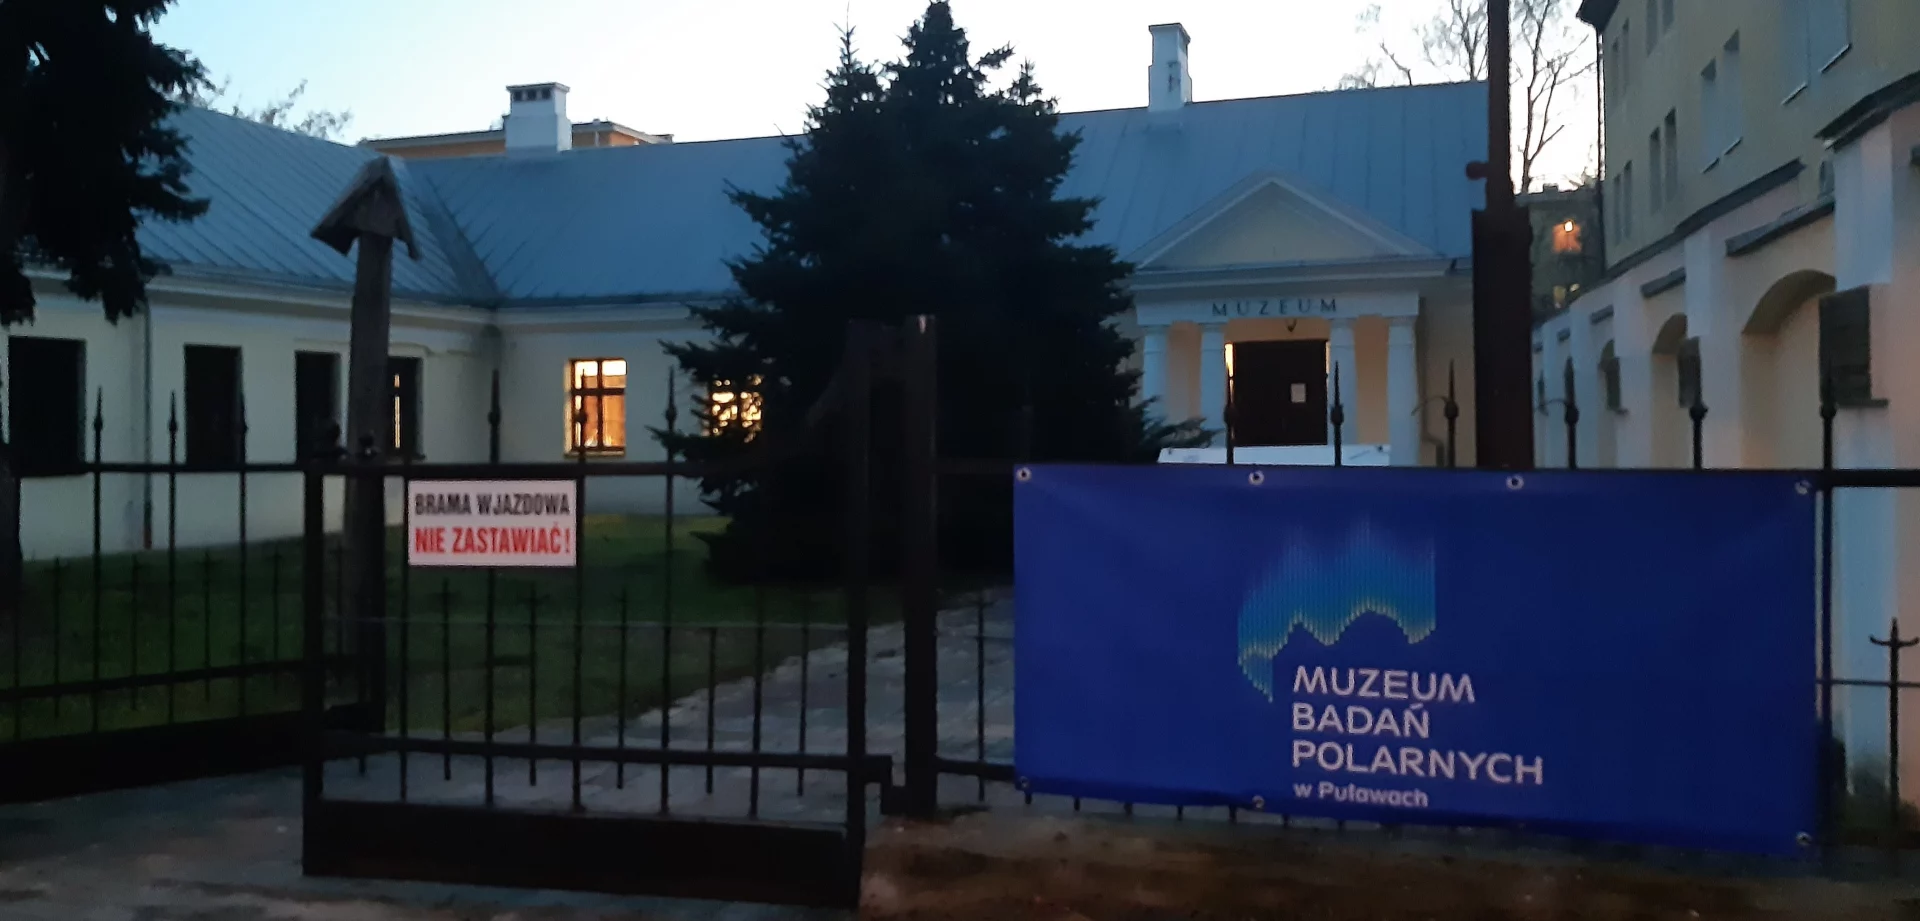 Muzeum Badań Polarnych w Puławach